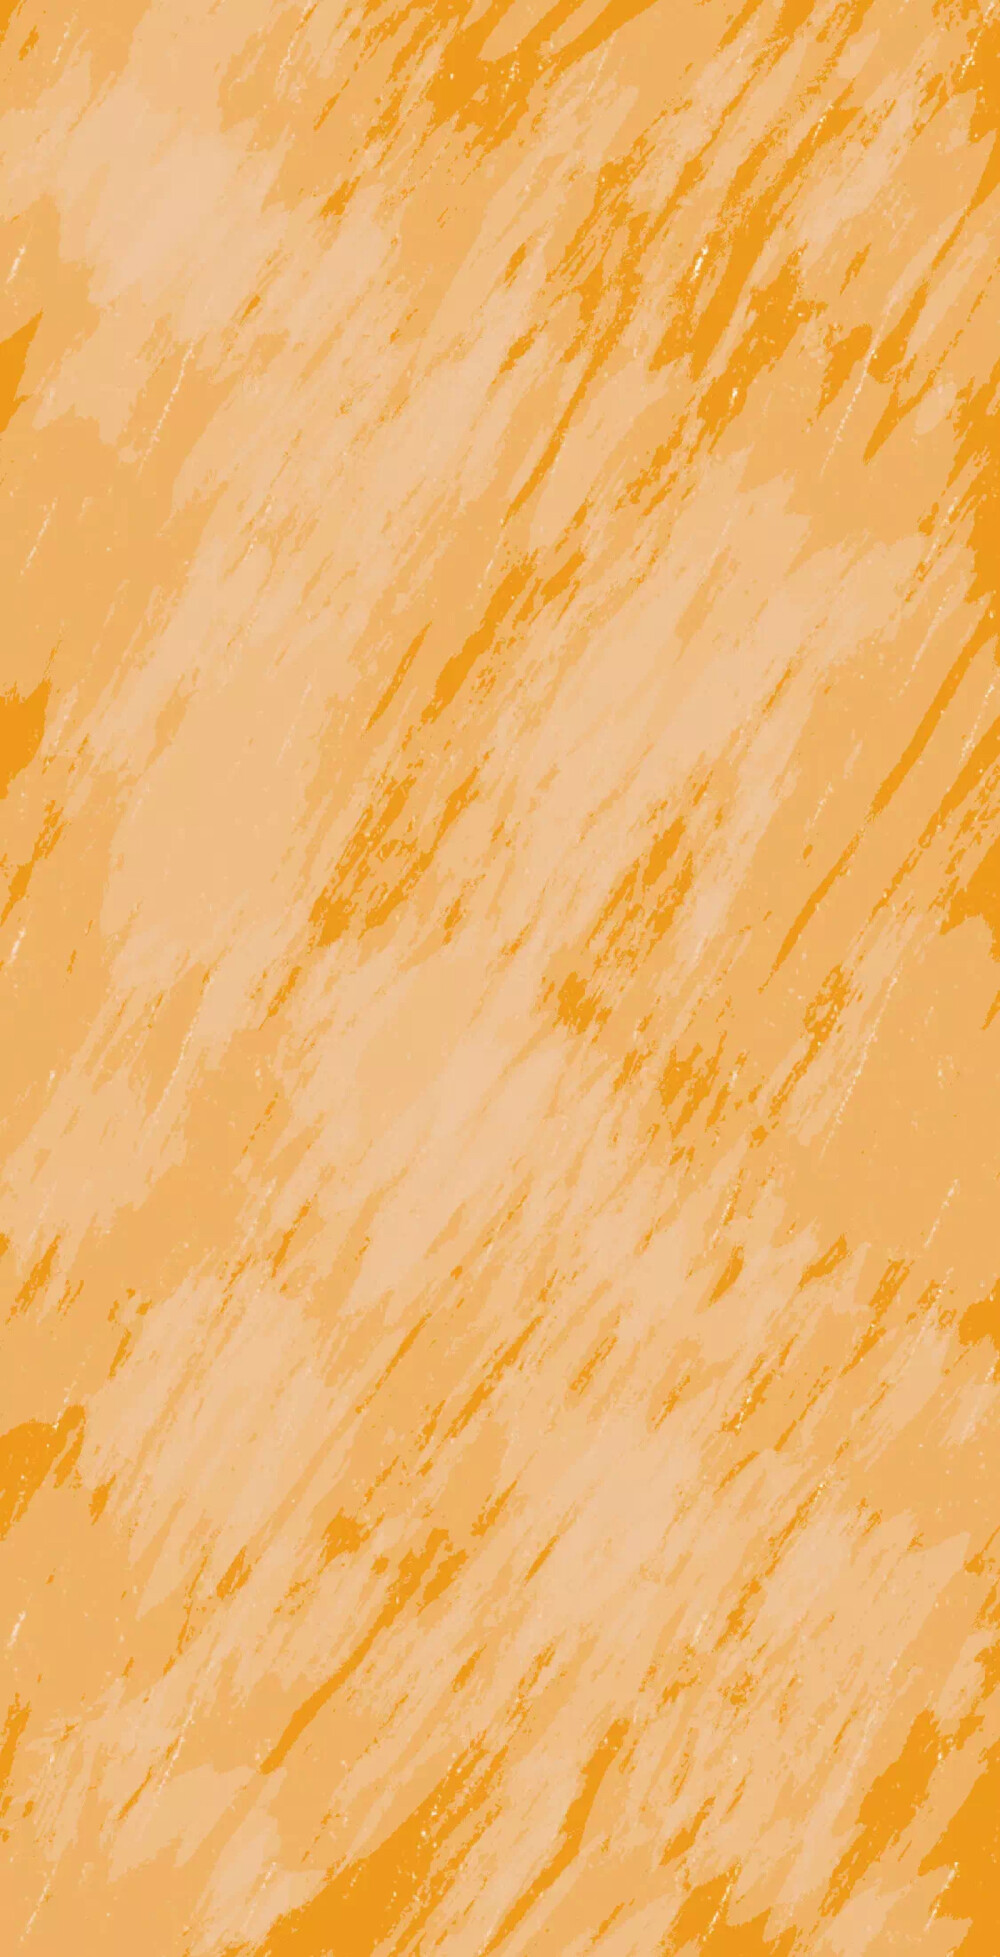 橙色壁纸